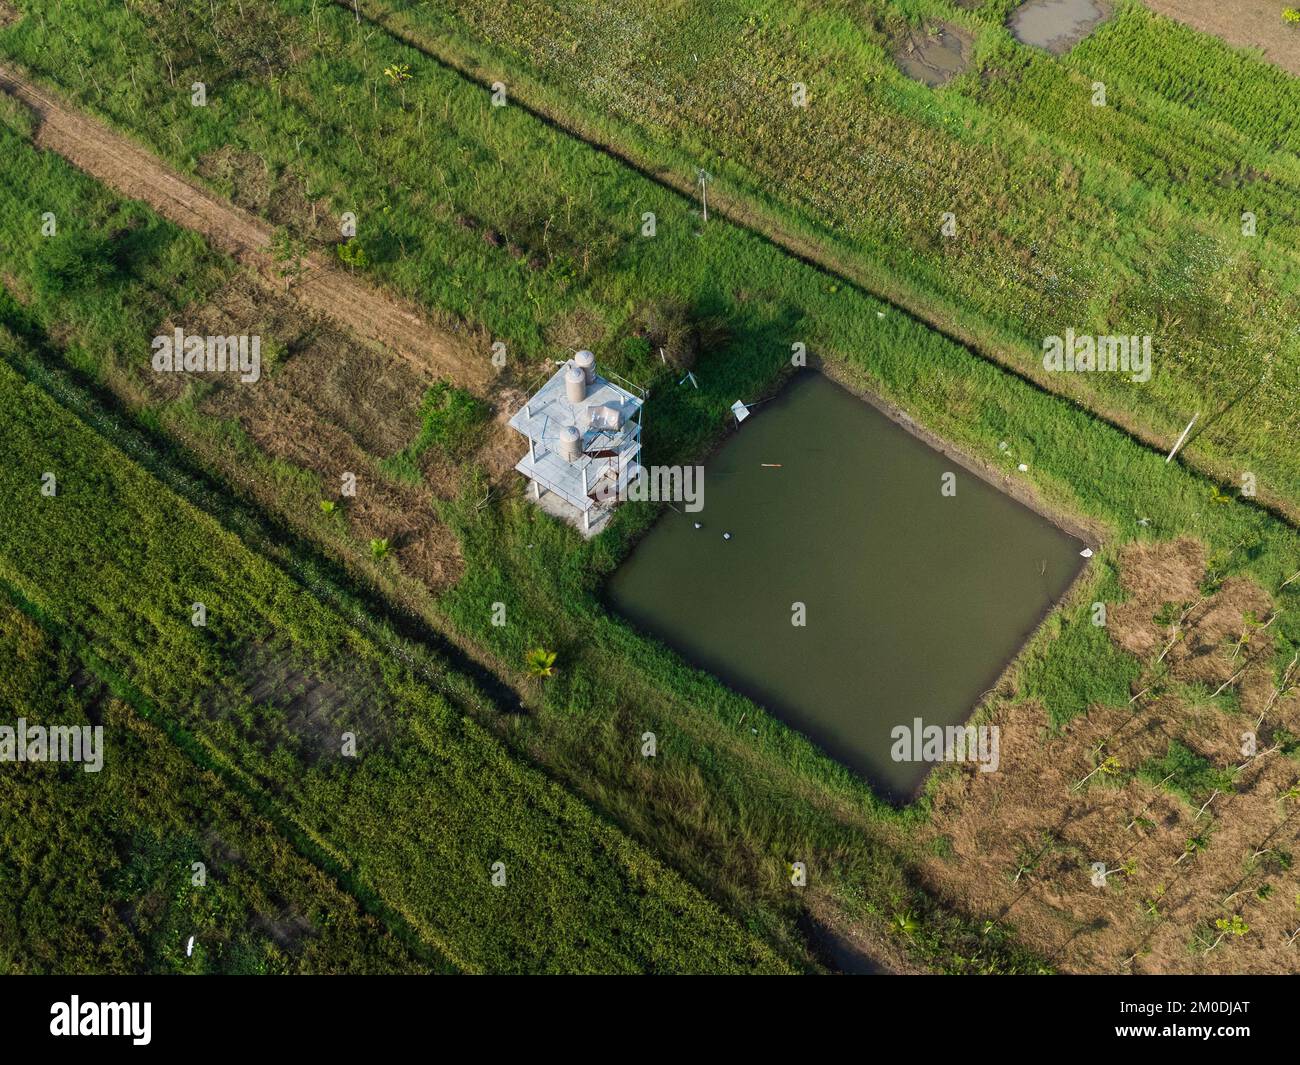 Vue aérienne des étangs pour l'agriculture dans les zones rurales. Étang pour l'agriculture agrégée. Concept d'économie de suffisance Banque D'Images